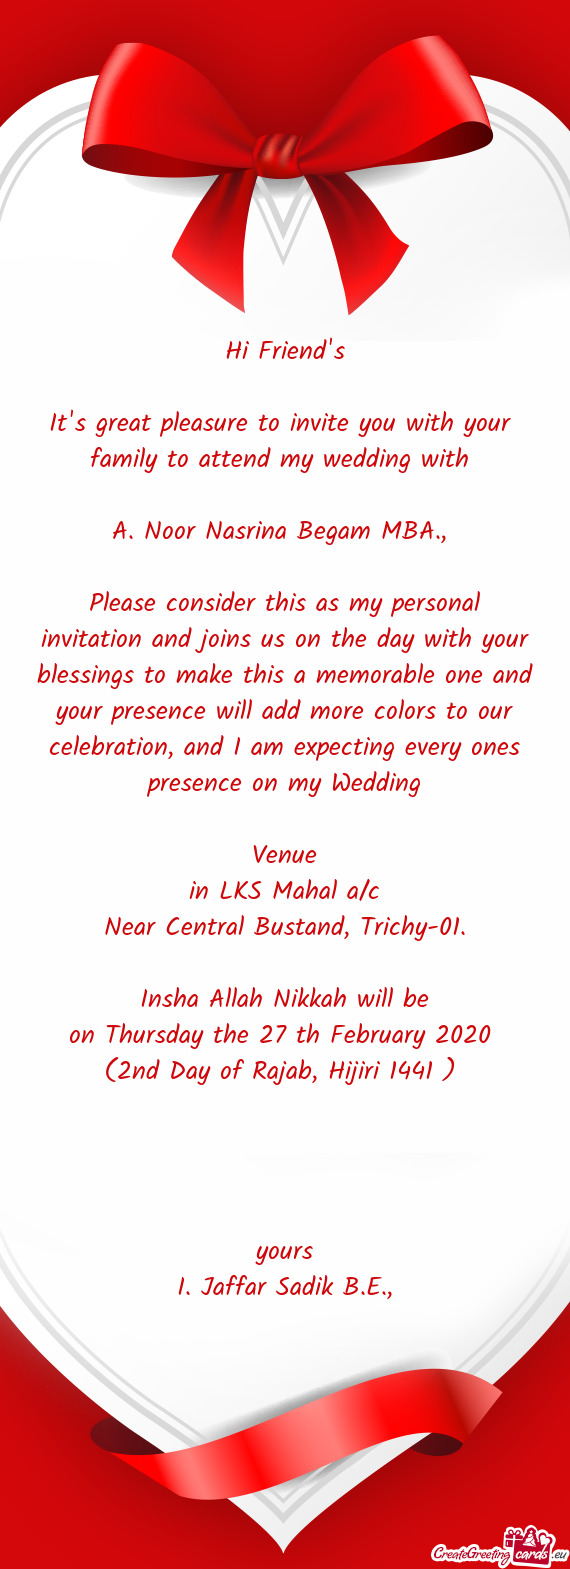 Noor Nasrina Begam MBA